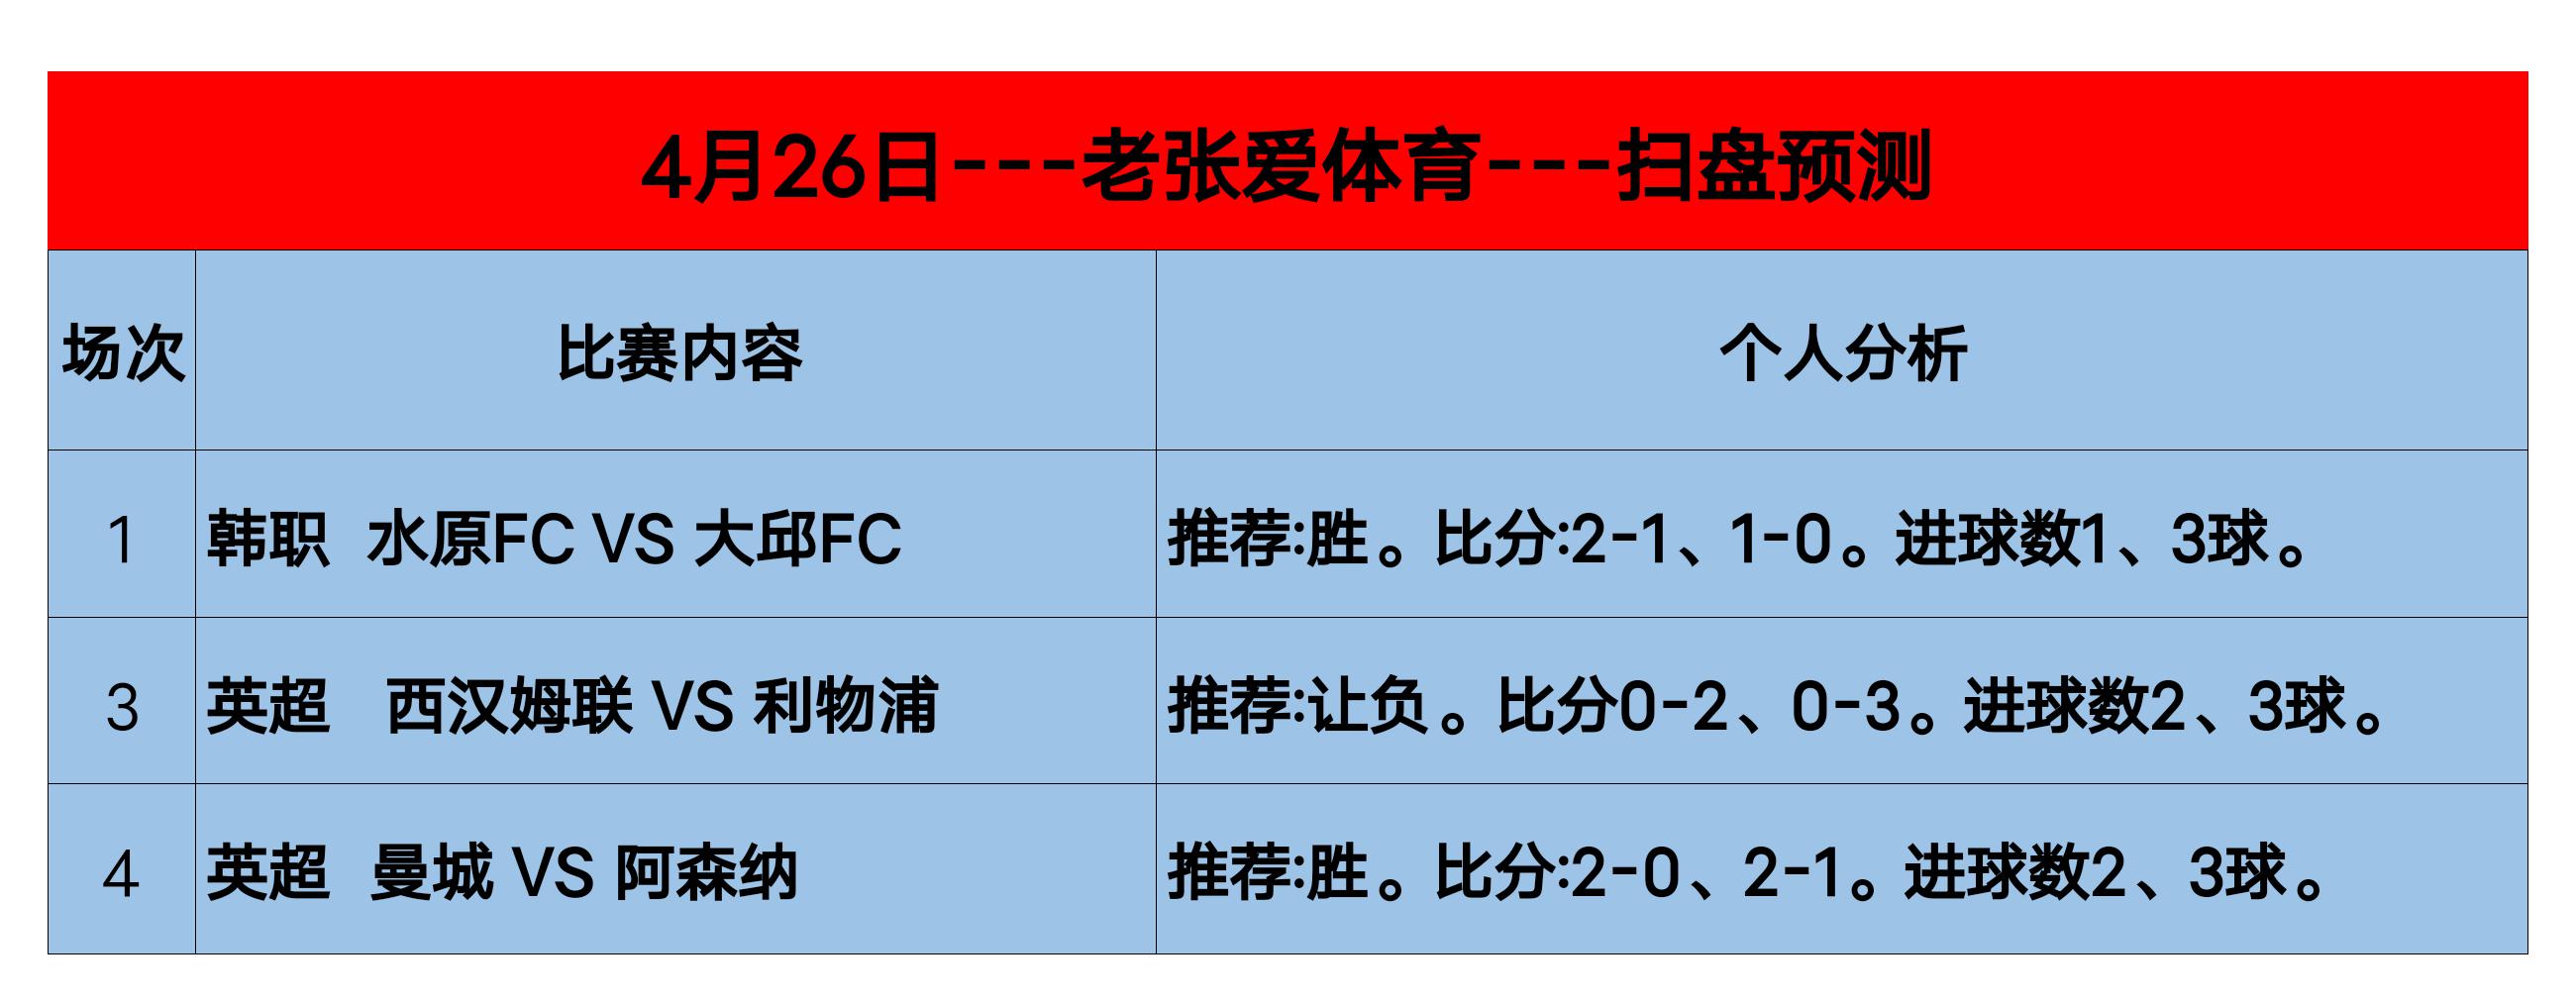 4月26日足球赛事推荐：3C1内附胜平负、进球数、比分